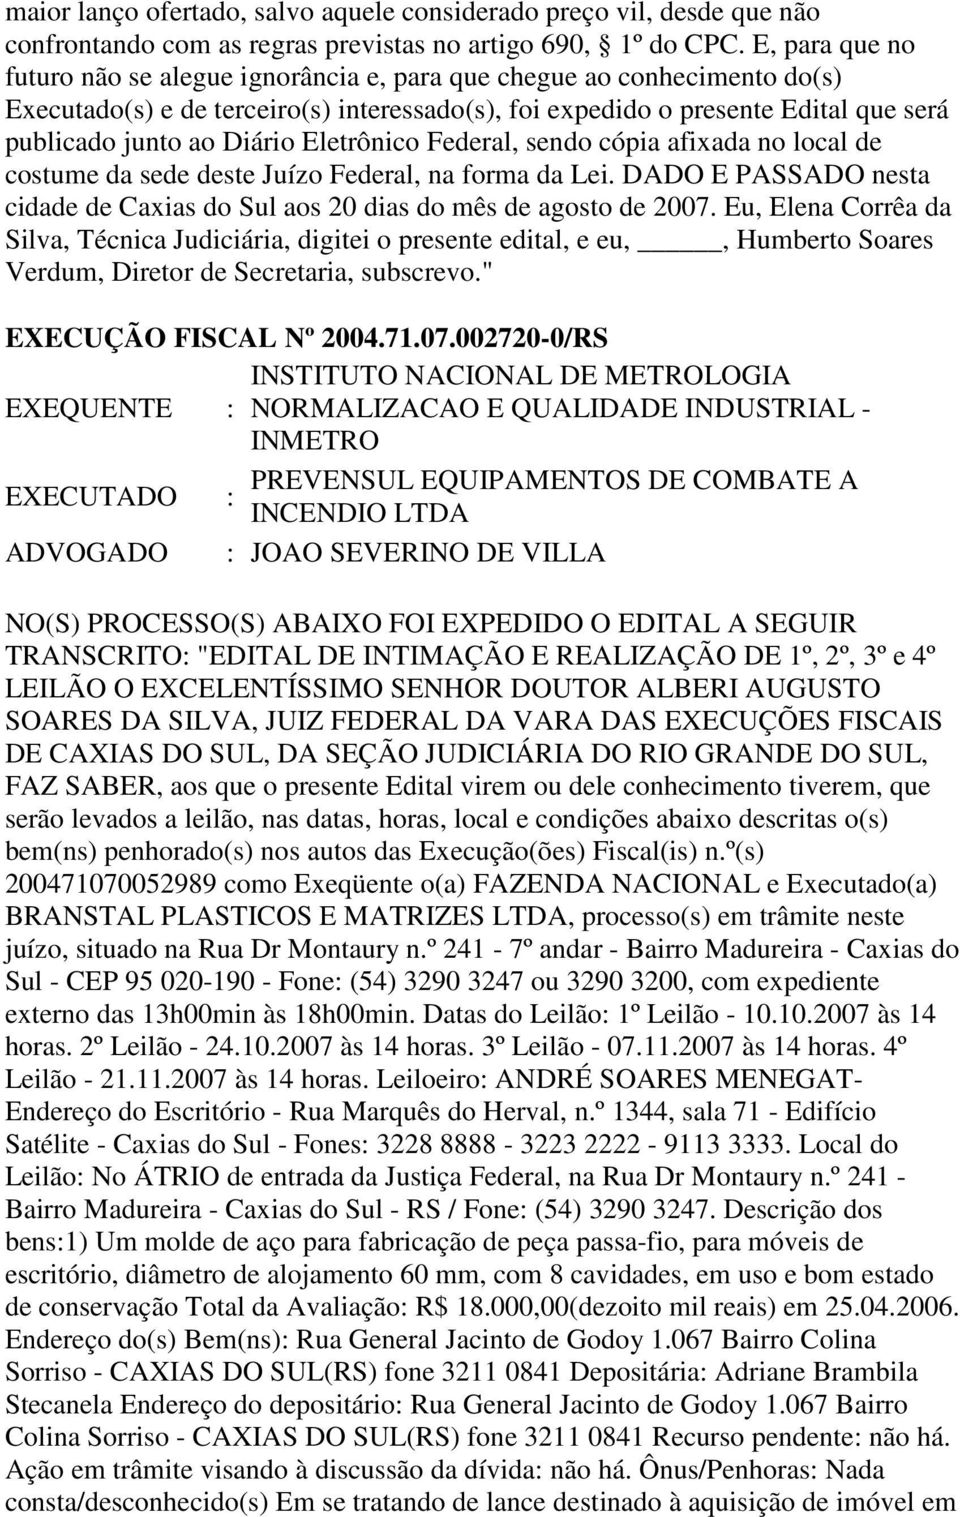 Eletrônico Federal, sendo cópia afixada no local de costume da sede deste Juízo Federal, na forma da Lei. DADO E PASSADO nesta cidade de Caxias do Sul aos 20 dias do mês de agosto de 2007.